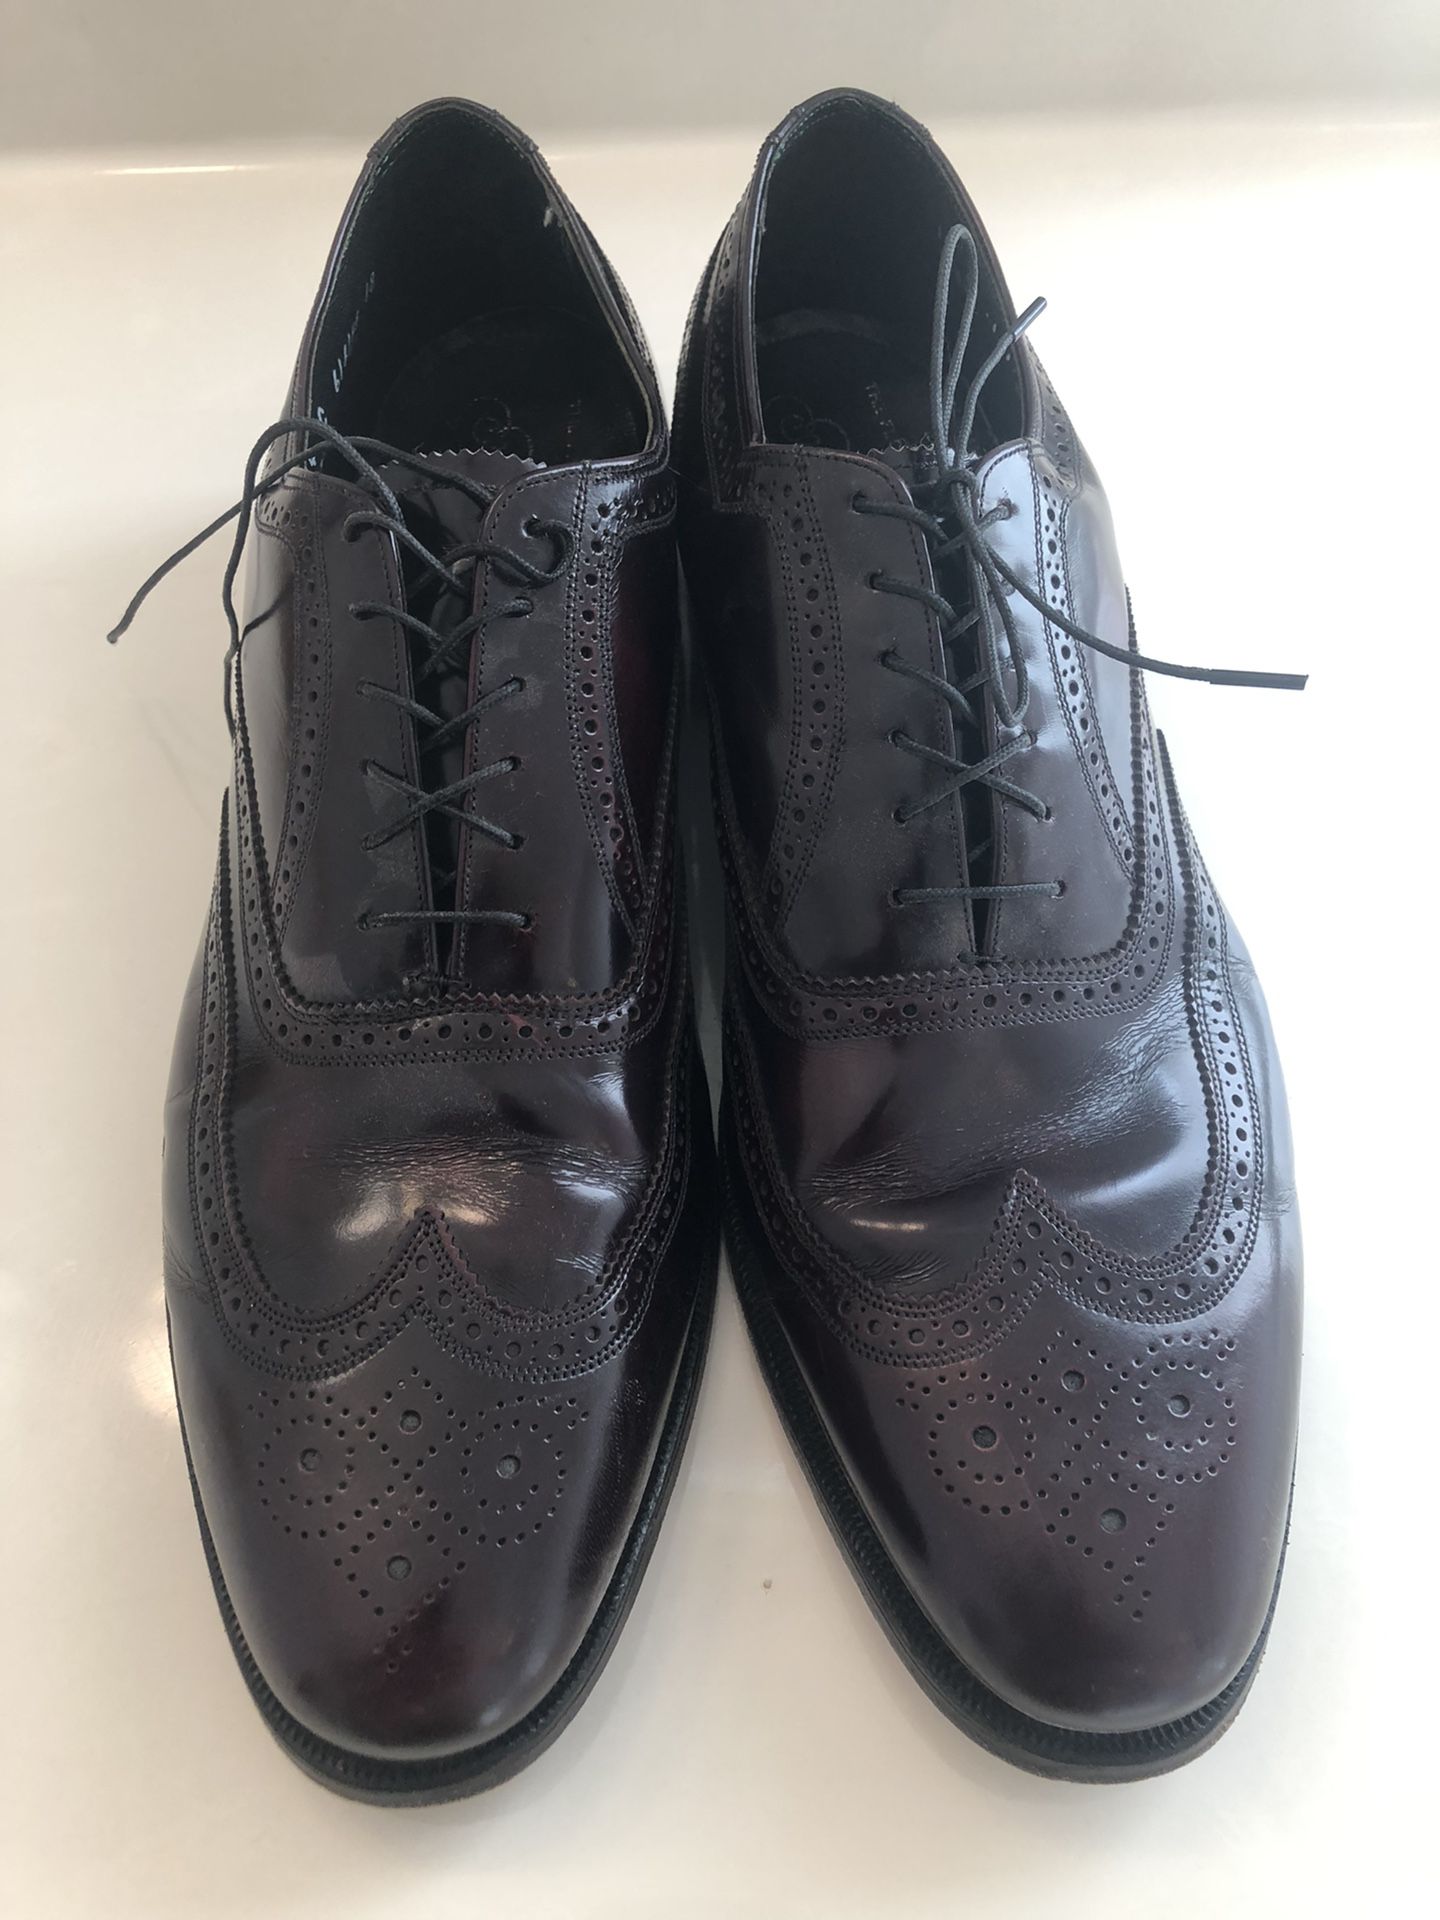 Men’s Dress Shoes Size 14C 